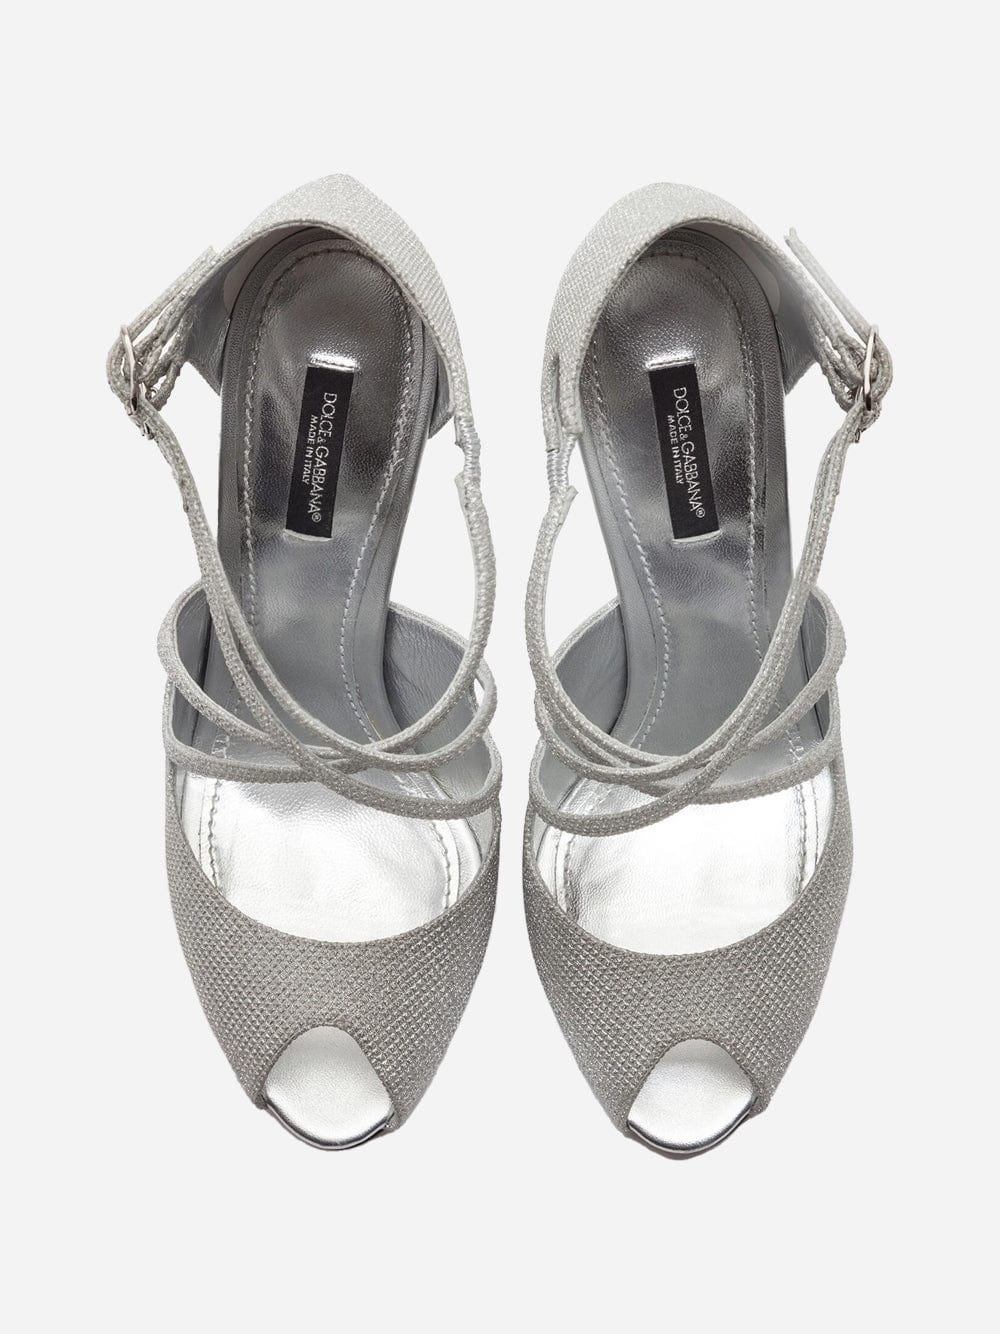 Dolce & Gabbana Glittery Nappa Mordore Sandals